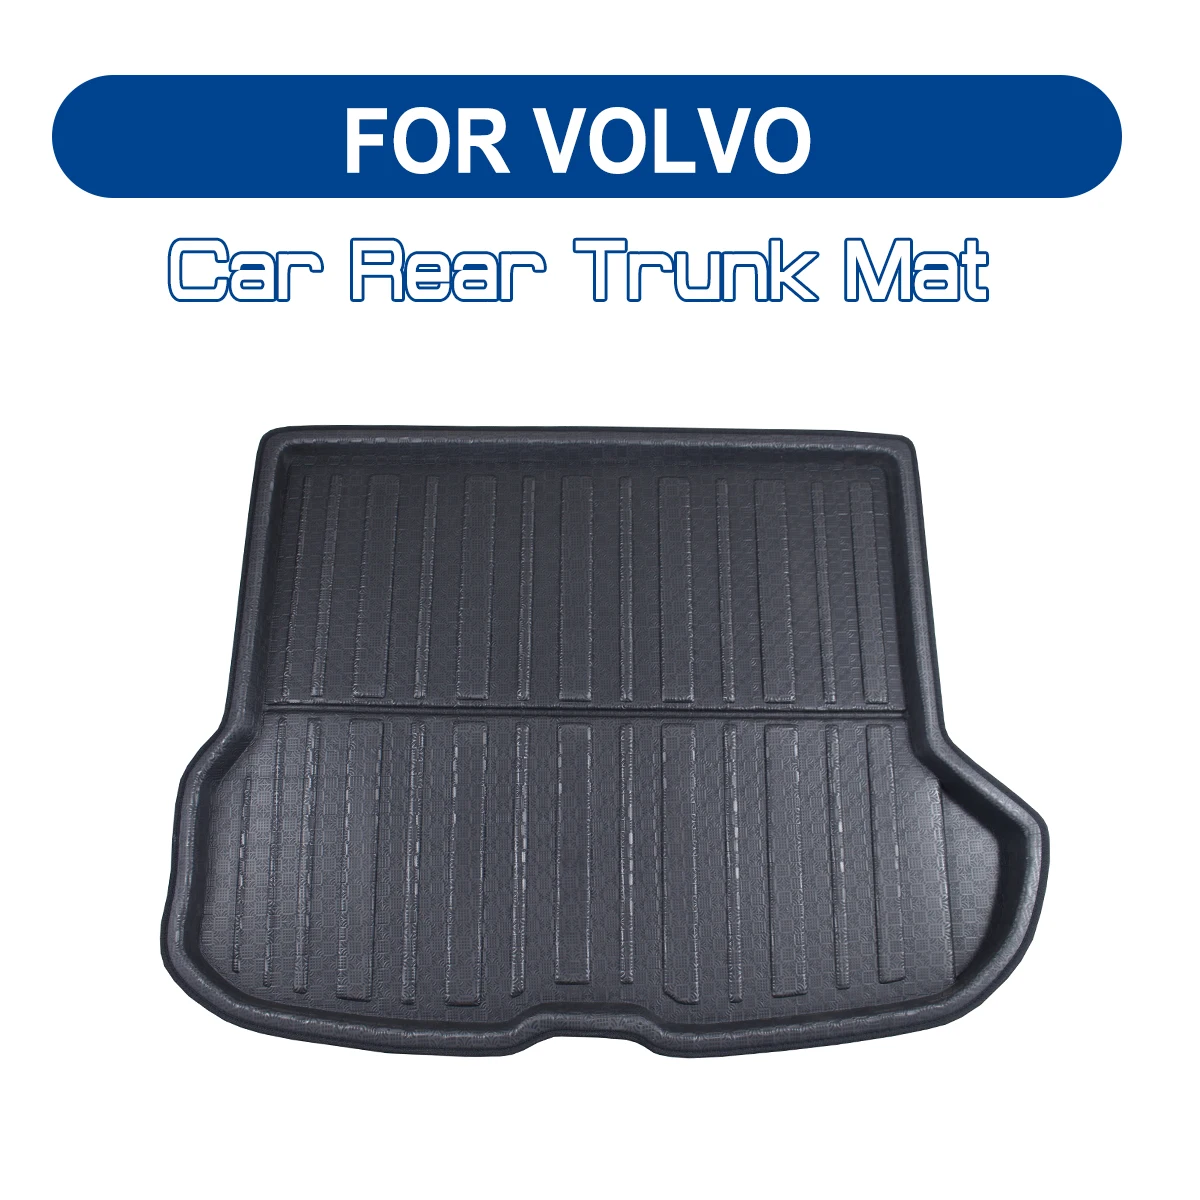 FOR VOLVO C30 S40 S60 S80 V40 V60 XC60 XC90 Car Rear Trunk Boot Mat Floor Mats Cargo Mat Waterproof